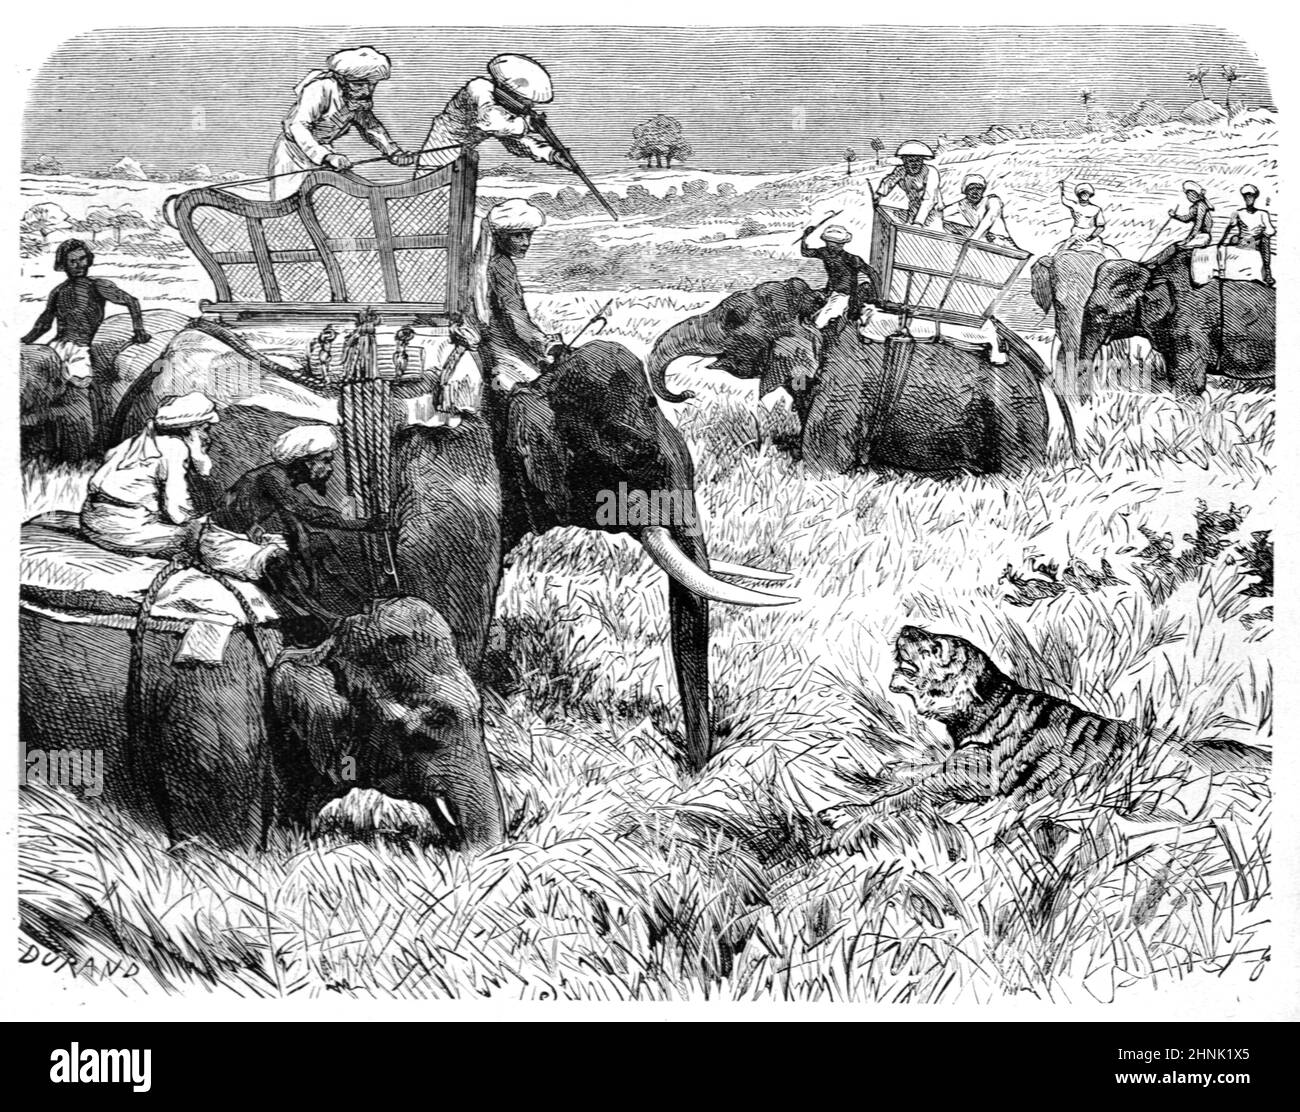 Caccia alla tigre o cacciatori che cacciano tigri da elefanti in British Colonial India. Illustrazione o incisione vintage 1883 Foto Stock